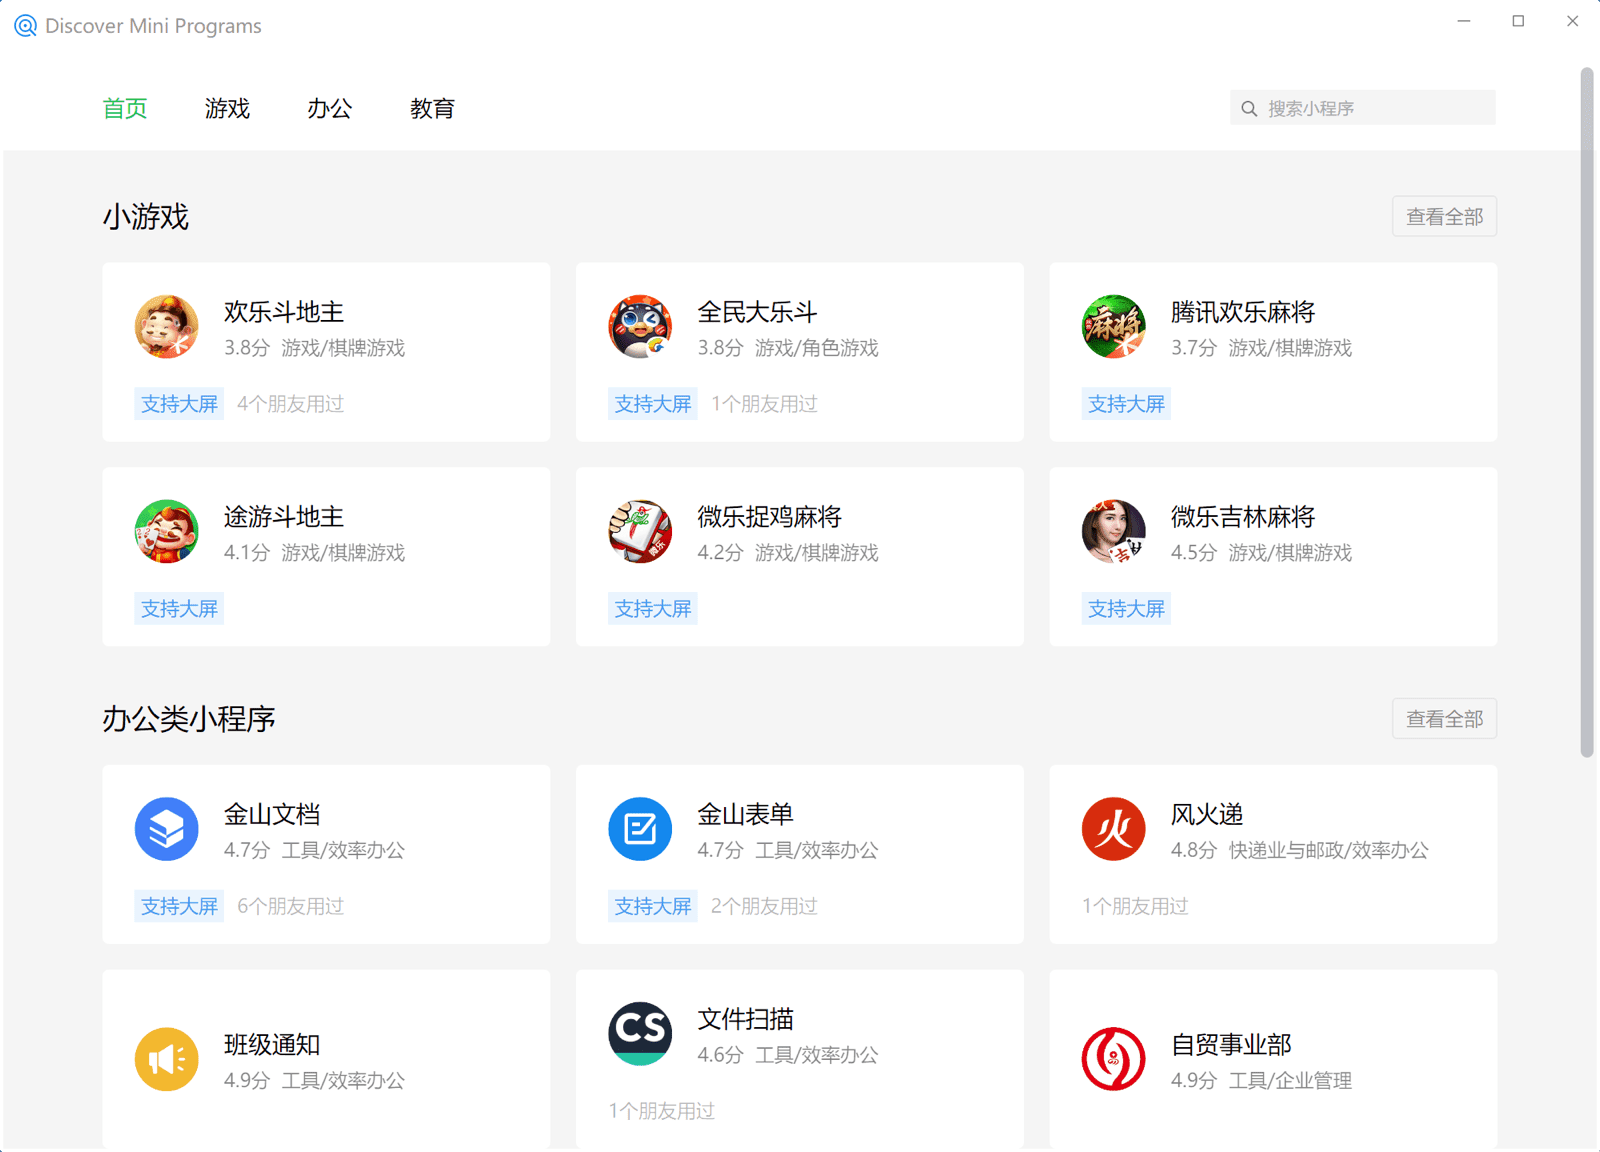 Tìm kiếm ứng dụng nhỏ trong ứng dụng khách WeChat Windows hiển thị các ứng dụng nhỏ được liệt kê trong nhiều danh mục khác nhau như trò chơi, kinh doanh, giáo dục, v.v.